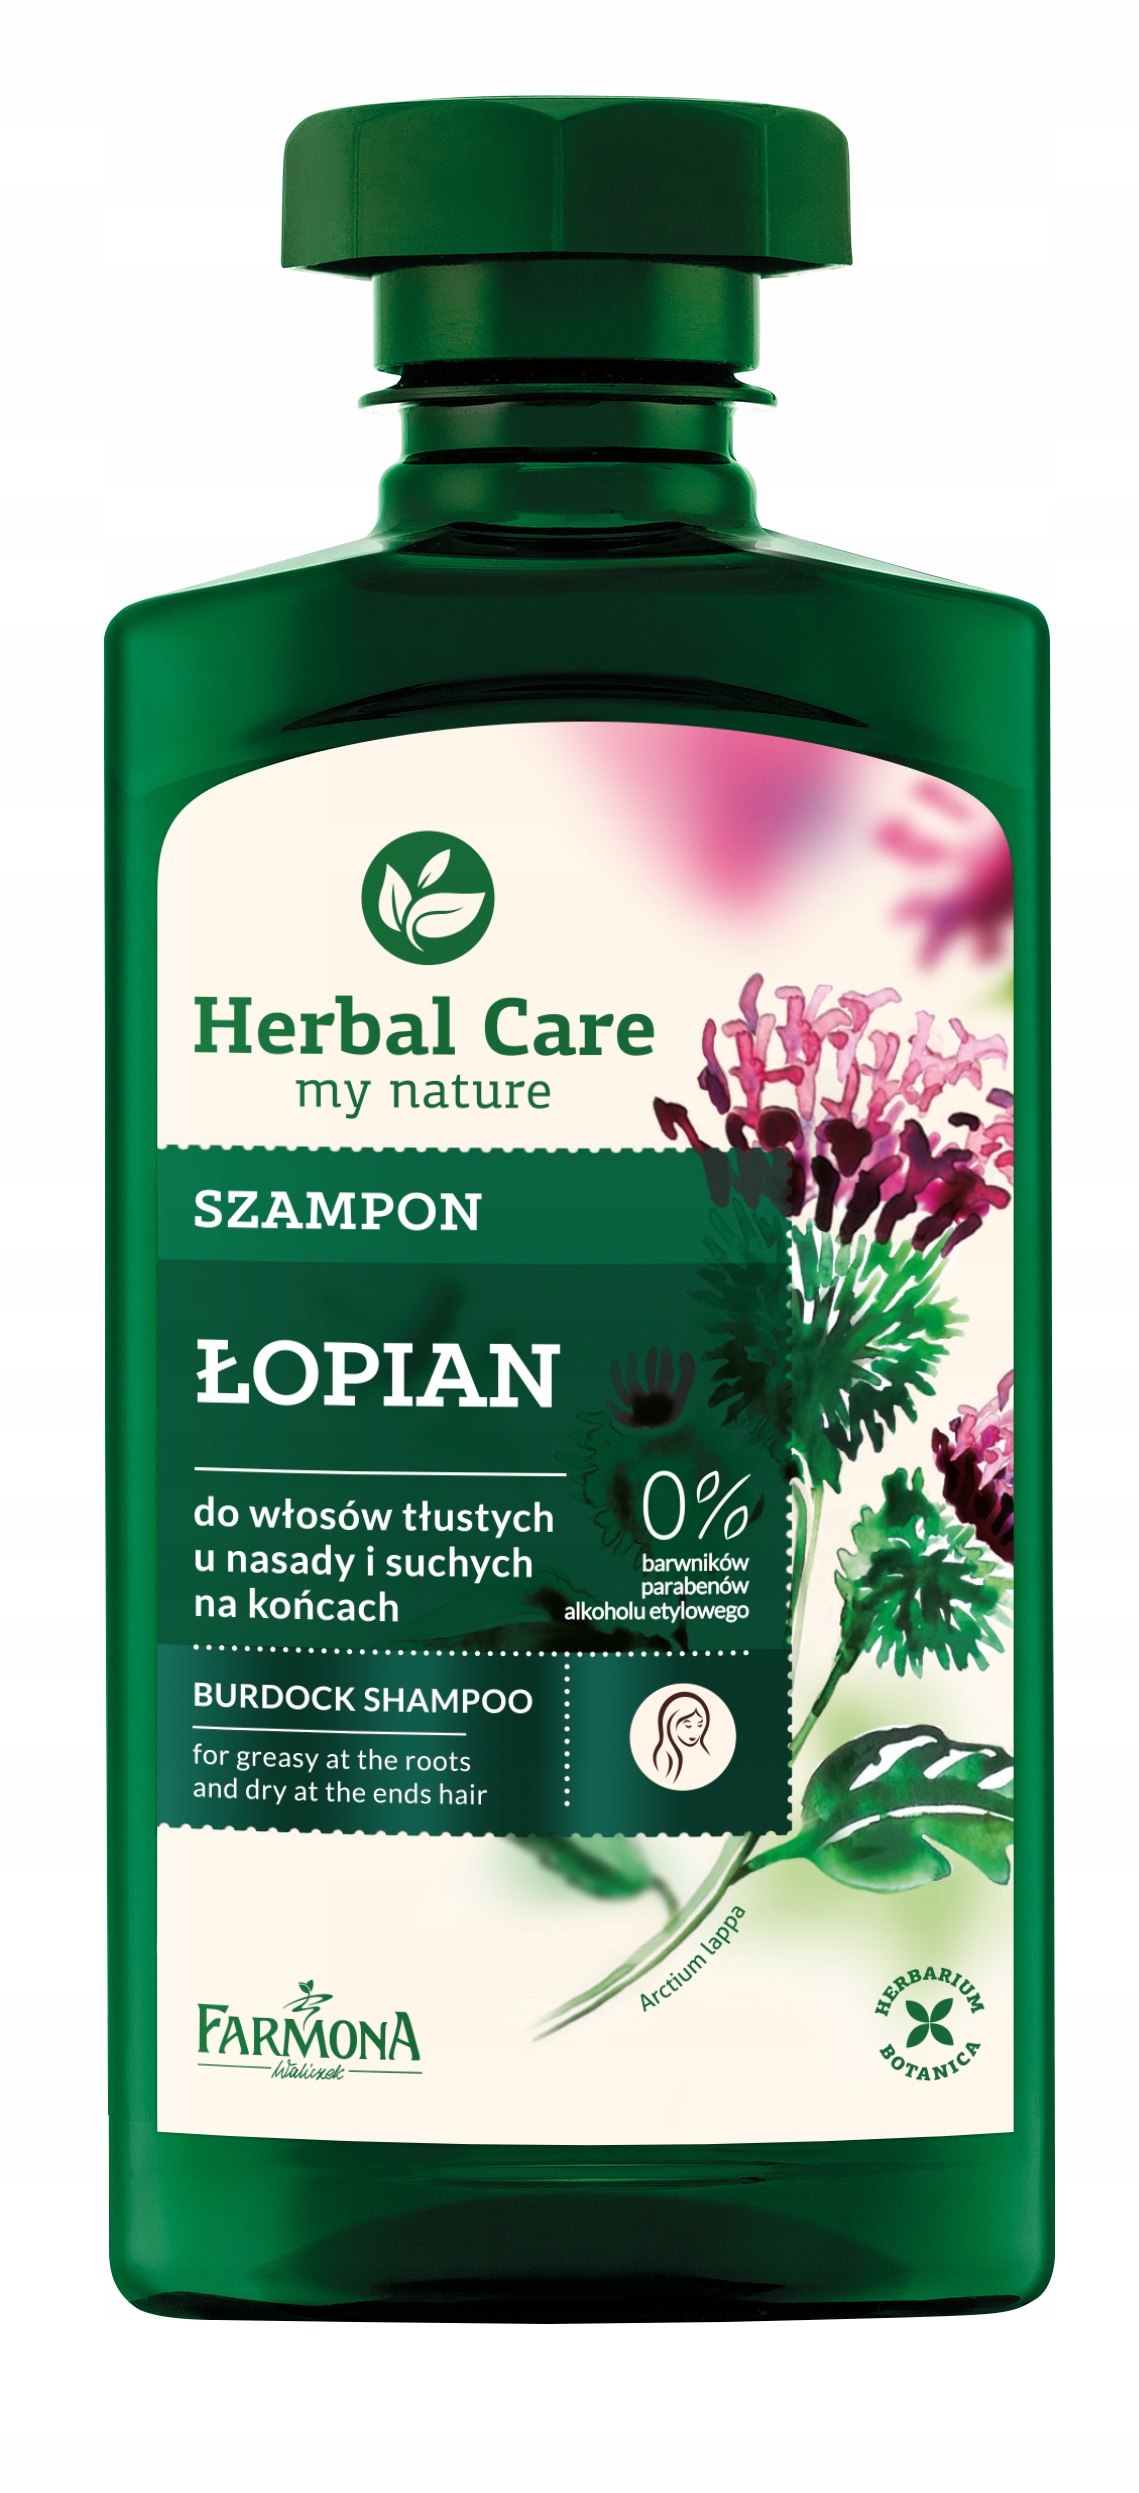 farmona herbal care szampon len lniany